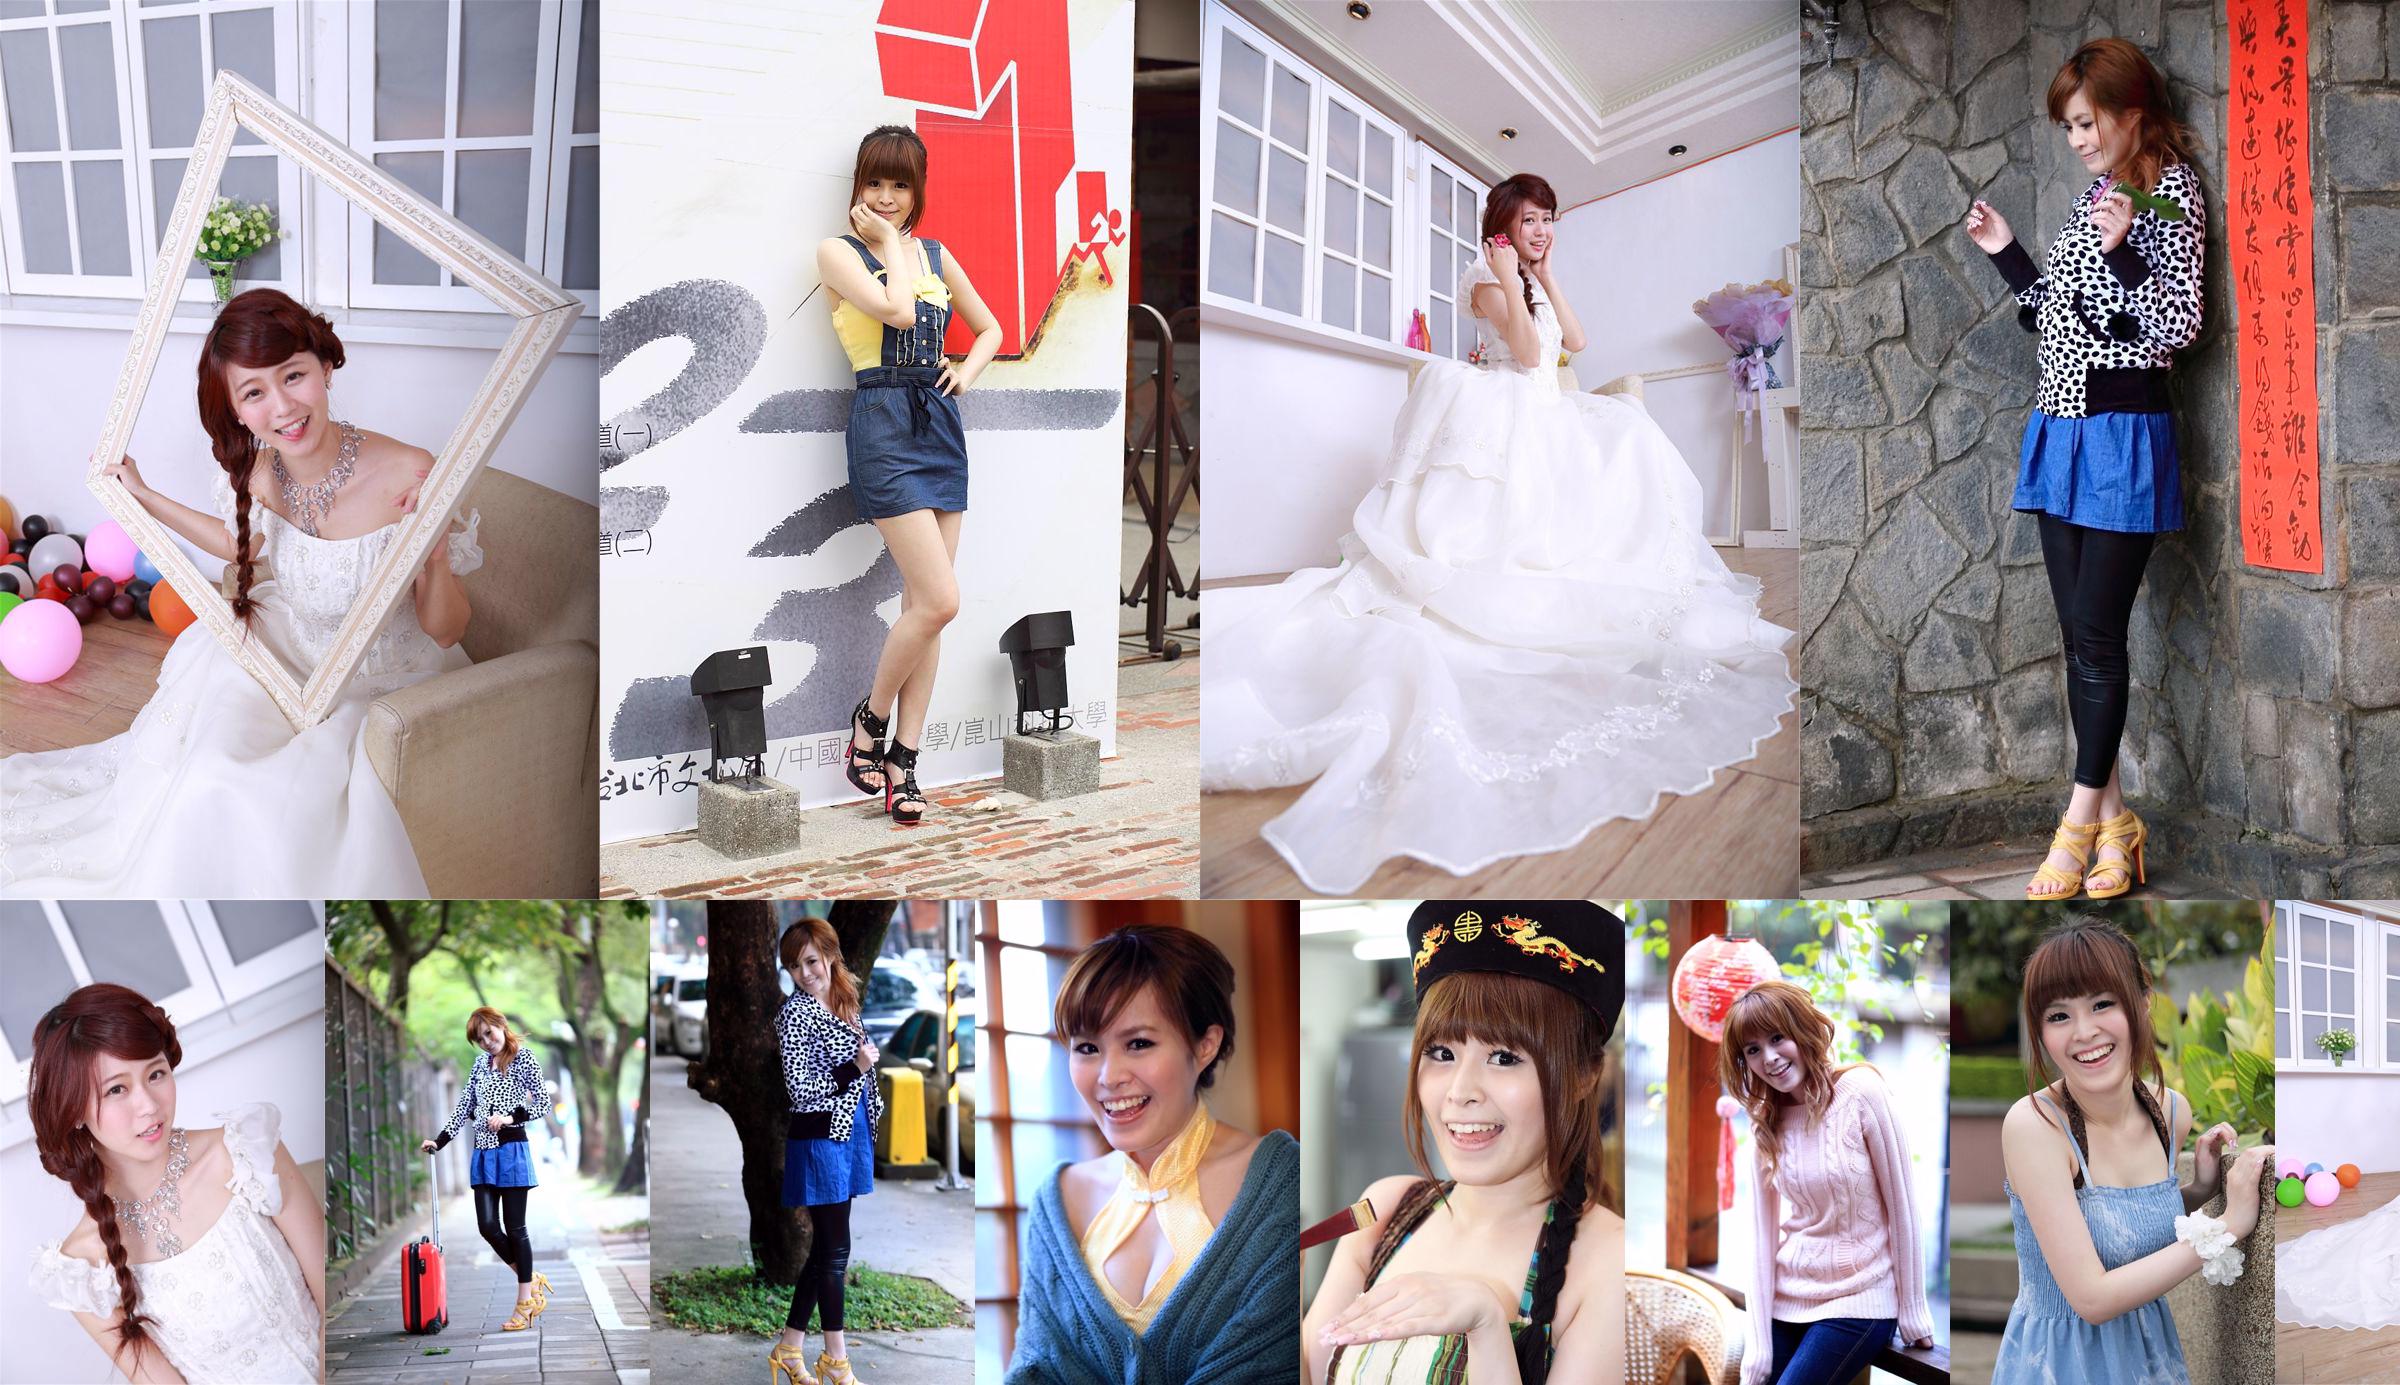 Taiwan's innocent girl Bai Bai/Li Yixuan "Mechanical and Electrical Girls' Wedding Studio Shooting" No.31aa3e Page 3